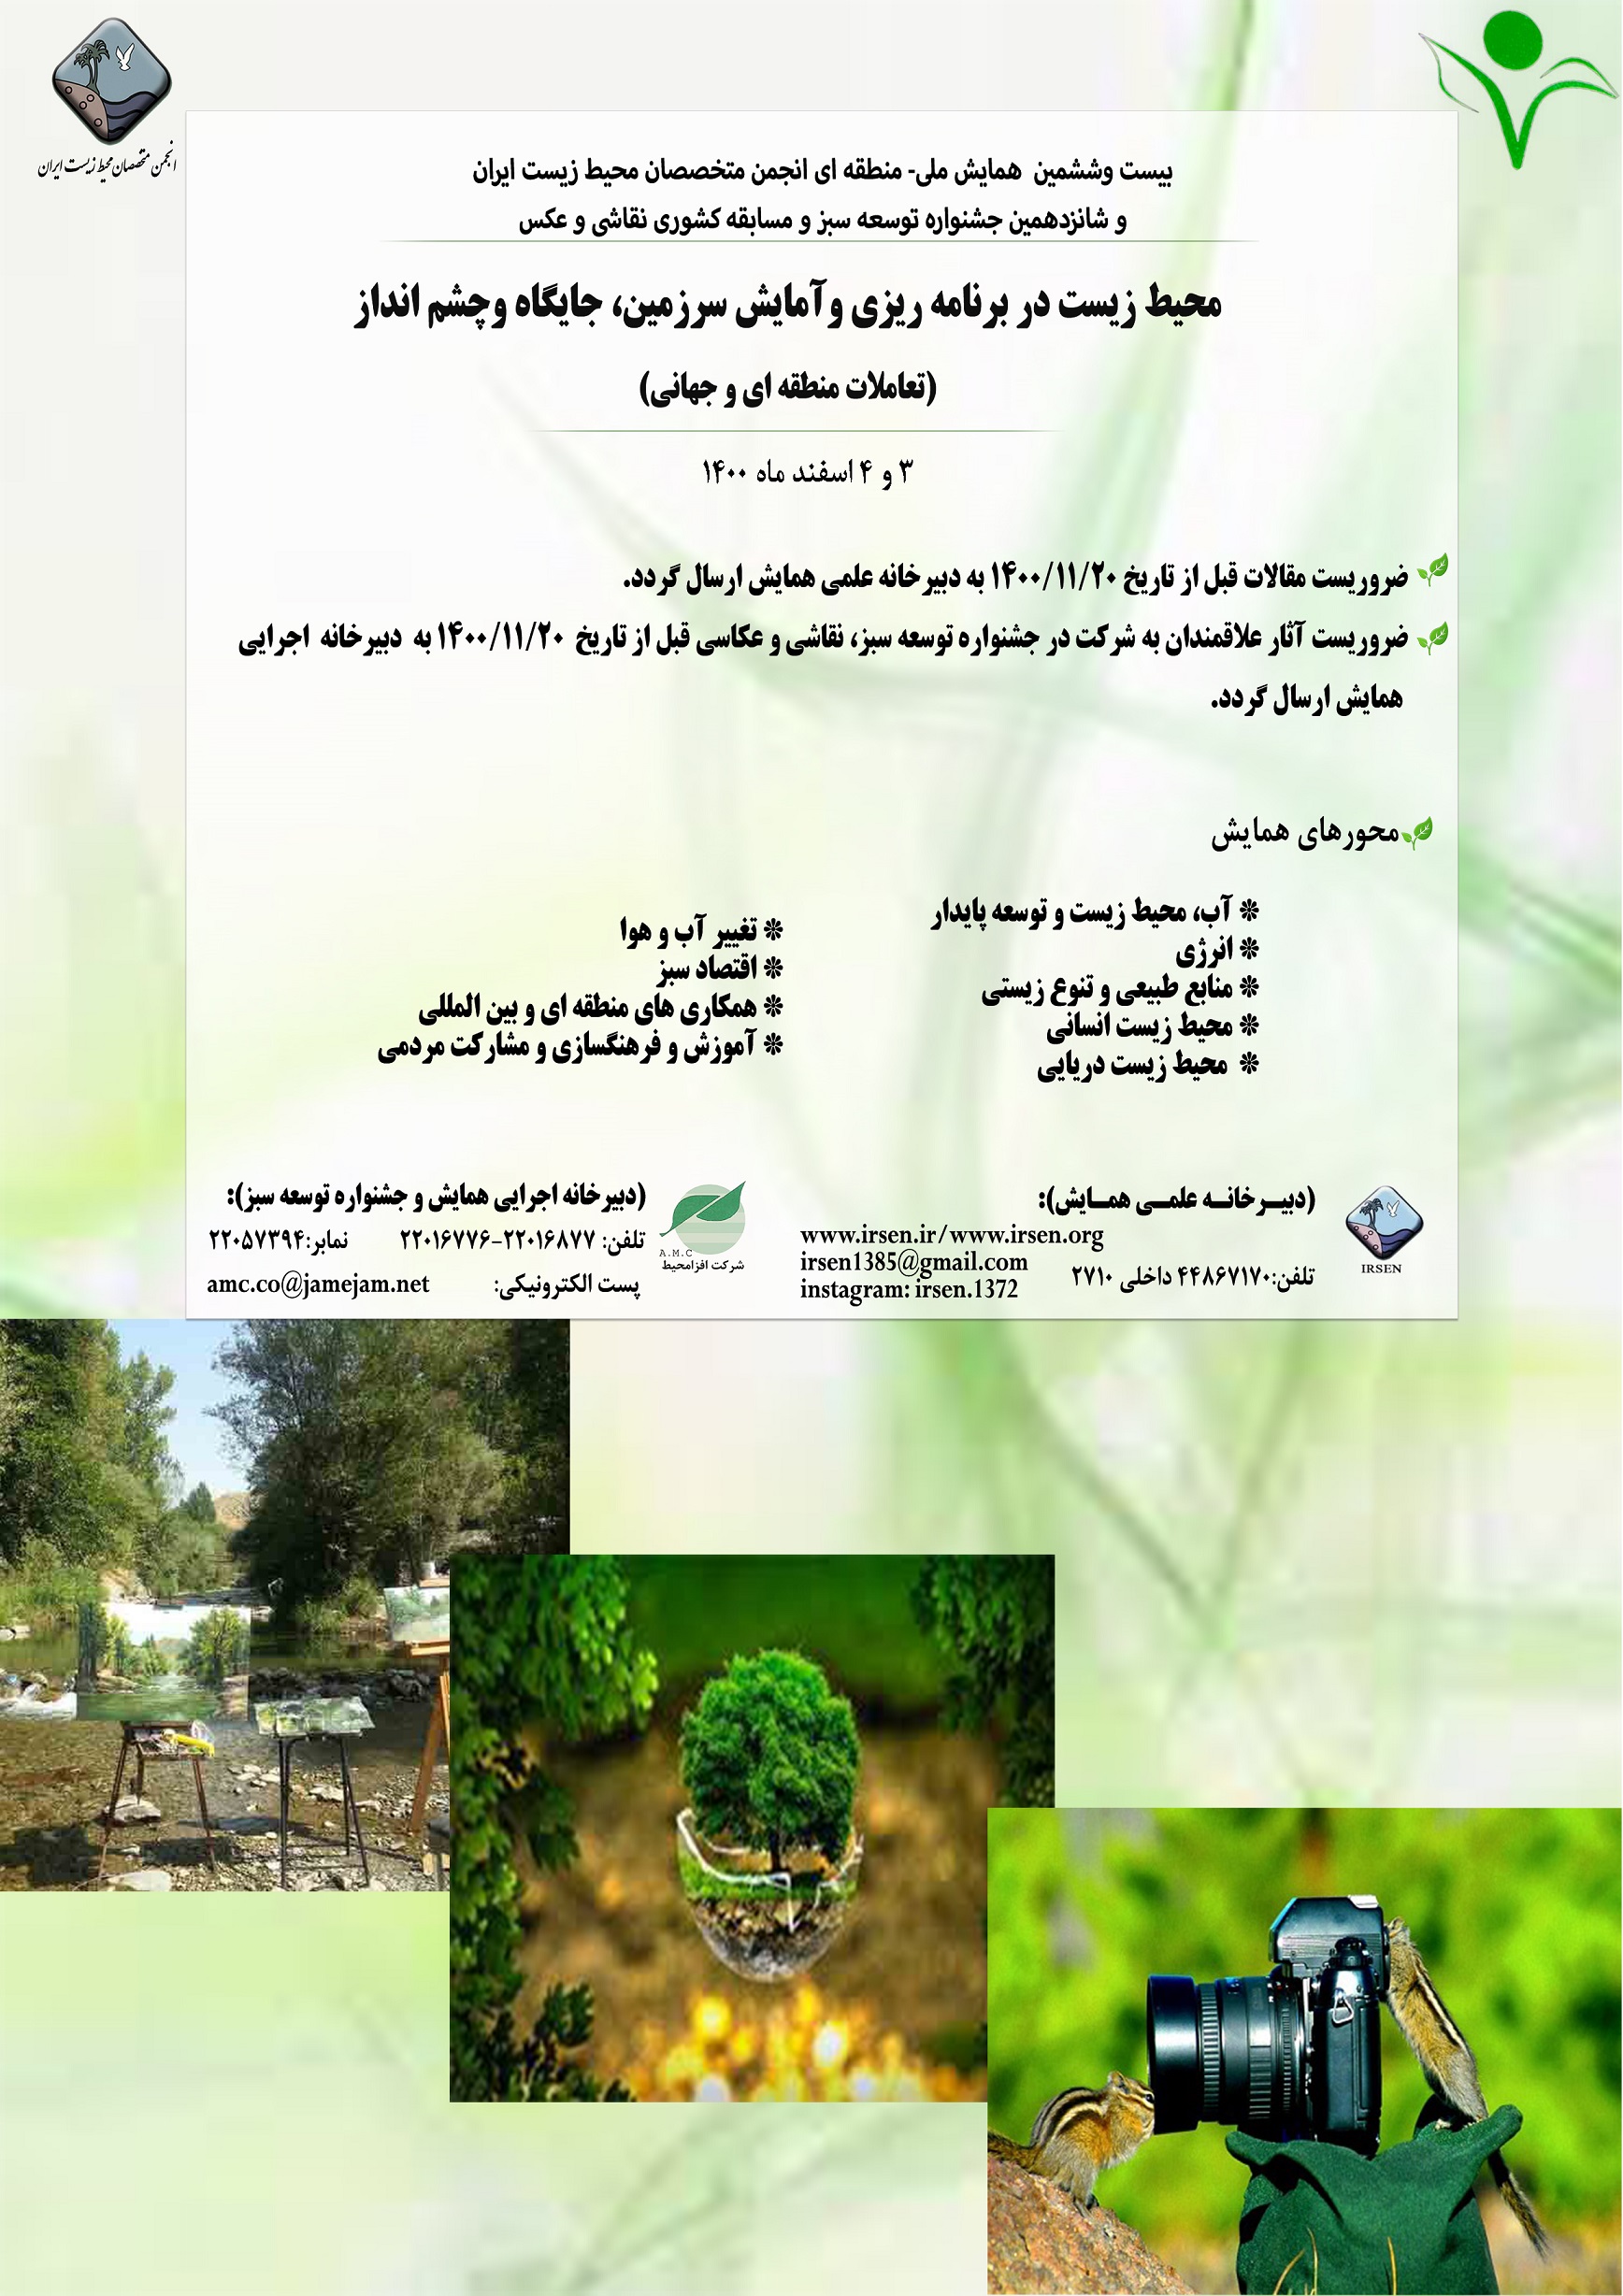 بیست-و-ششمین-همایش-ملی-منطقه-ای-انجمن-متخصصان-محیط-زیست-ایران-و-شانزدهمین-جشنواره-توسعه-سبز-و-مسابقه-کشوری-نقاشی-و-عکس-2